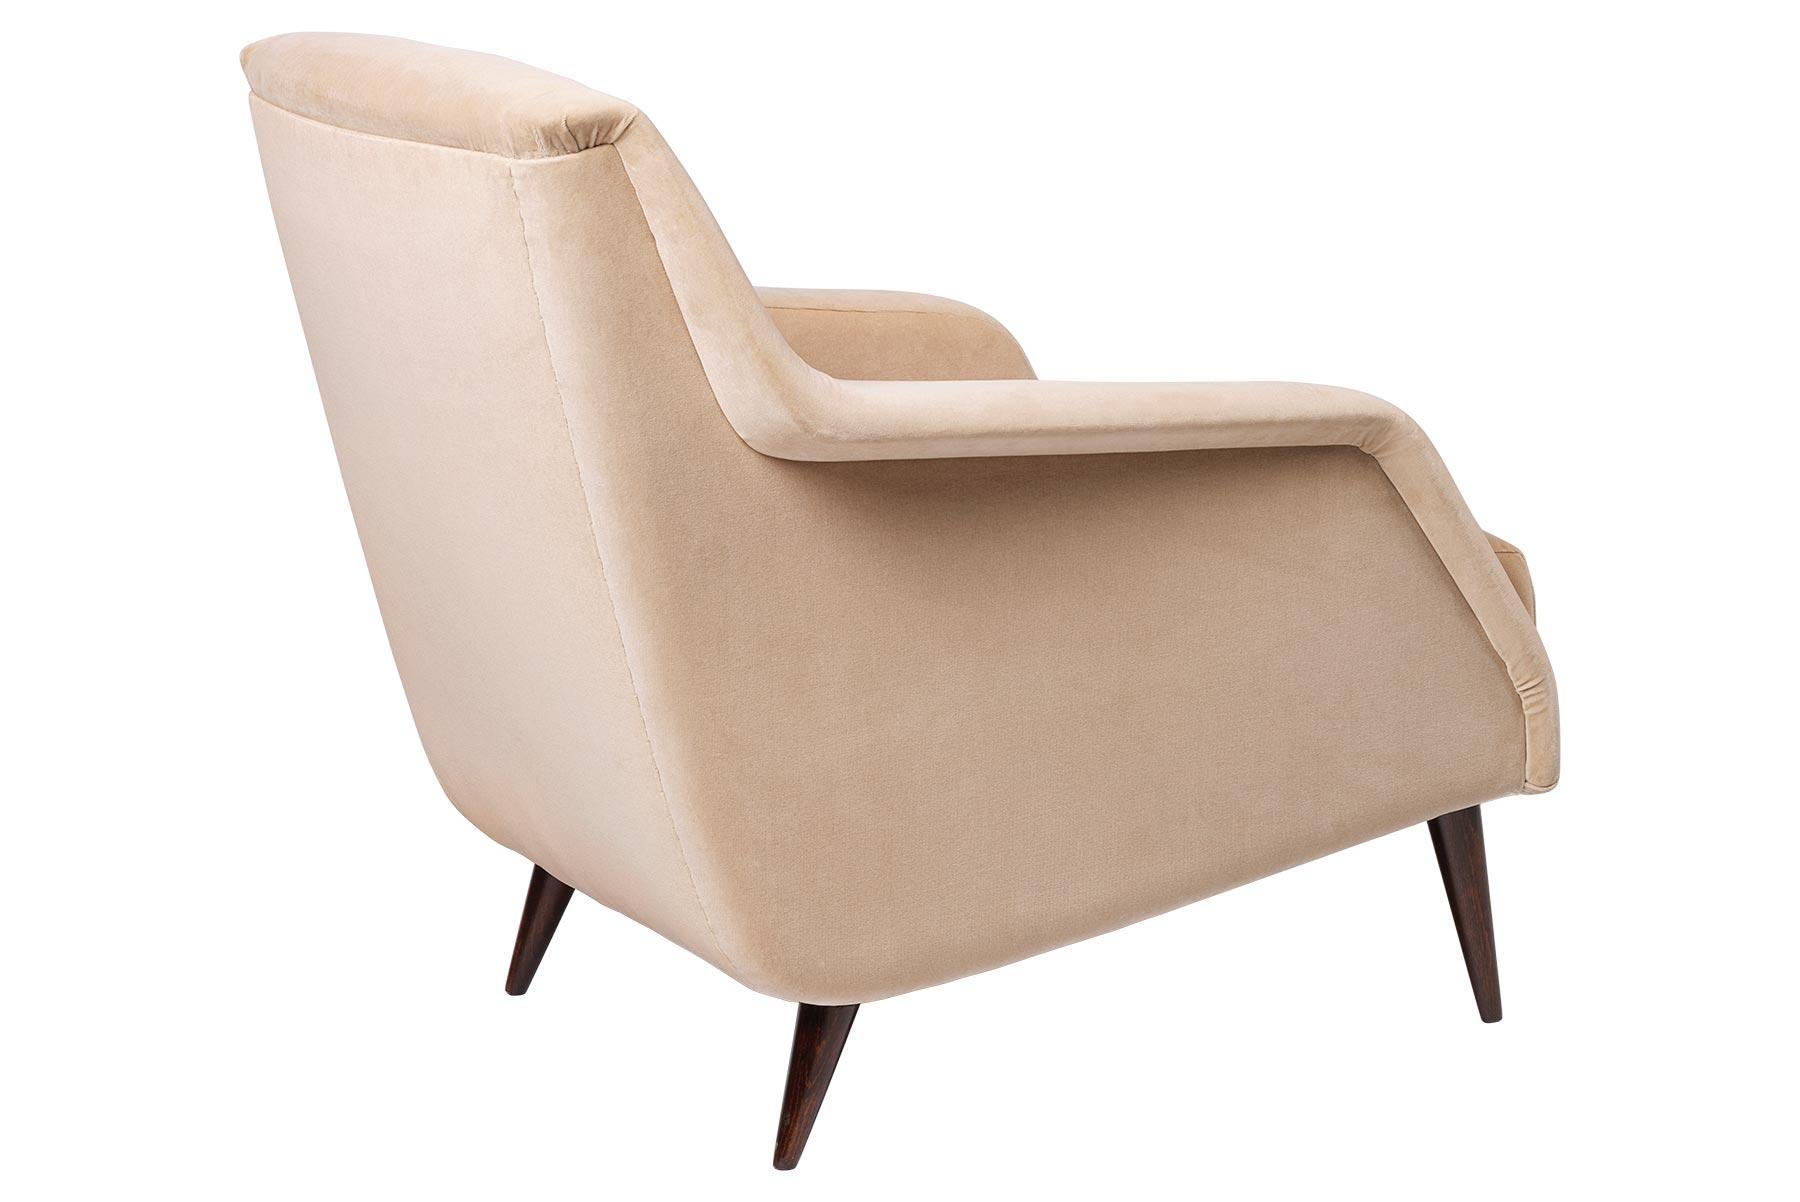 Le fauteuil de salon CDC.1 a été conçu par Carlo de Carli en 1954 et présente le style élégant du design minimaliste, typique de l'époque. La chaise longue CDC.1 se pose sur le sol de manière gracieuse et élancée, ses bras s'élancent comme des